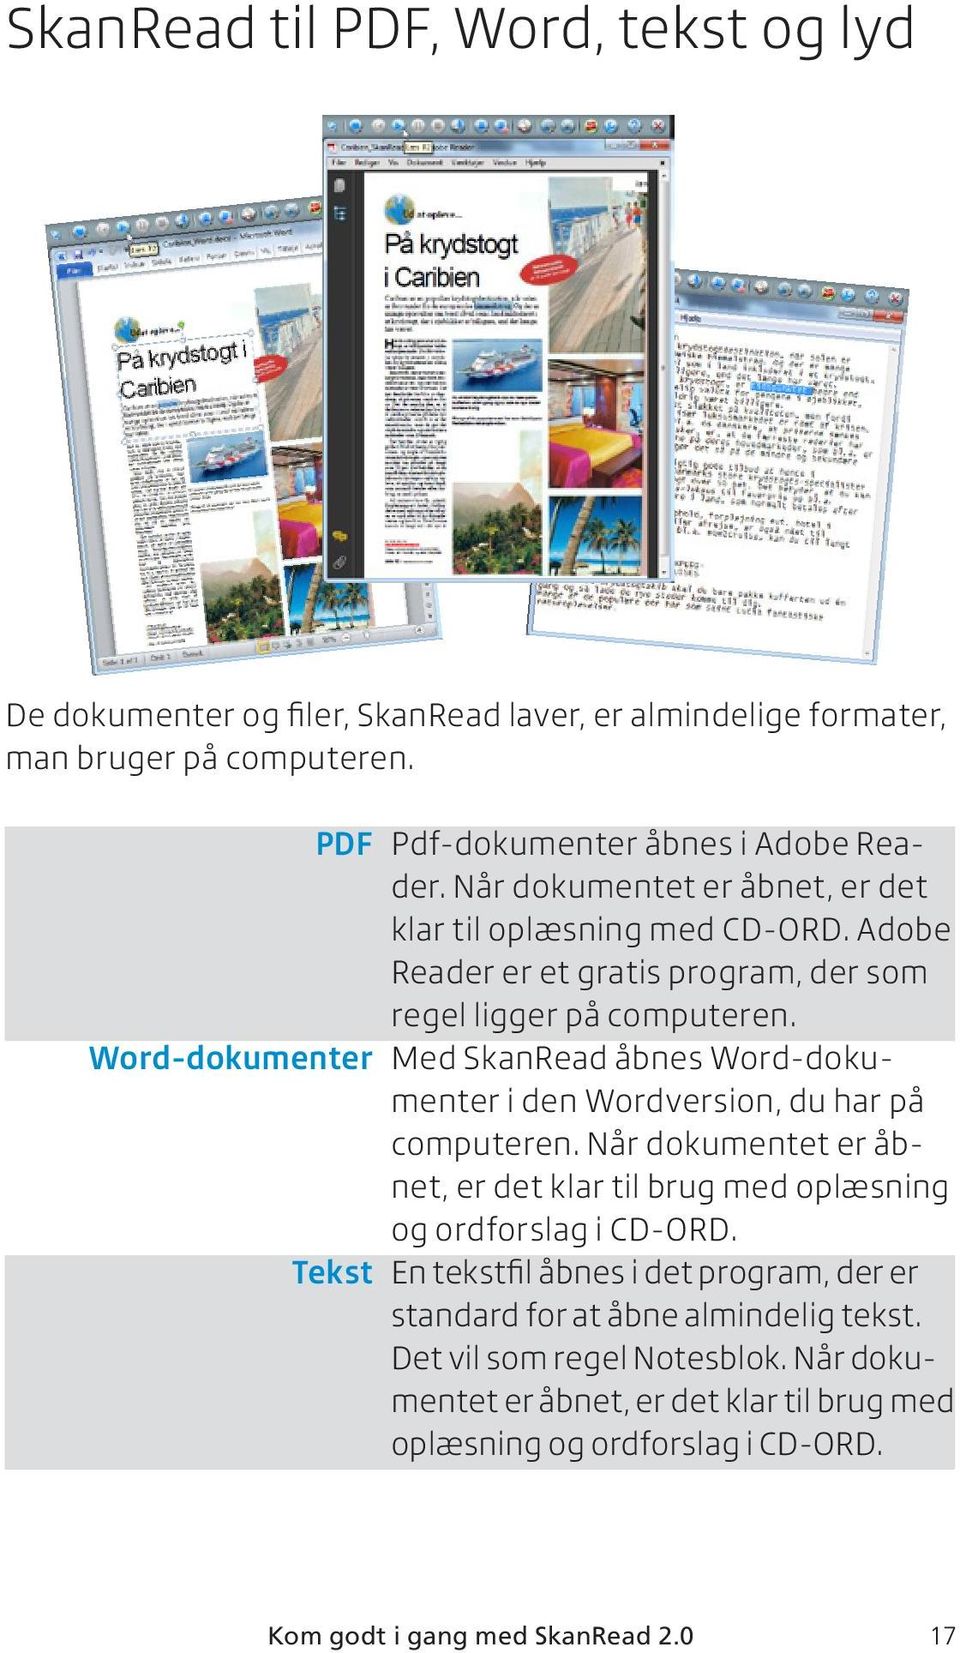 Word-dokumenter Med SkanRead åbnes Word-dokumenter i den Wordversion, du har på computeren. Når dokumentet er åbnet, er det klar til brug med oplæsning og ordforslag i CD-ORD.